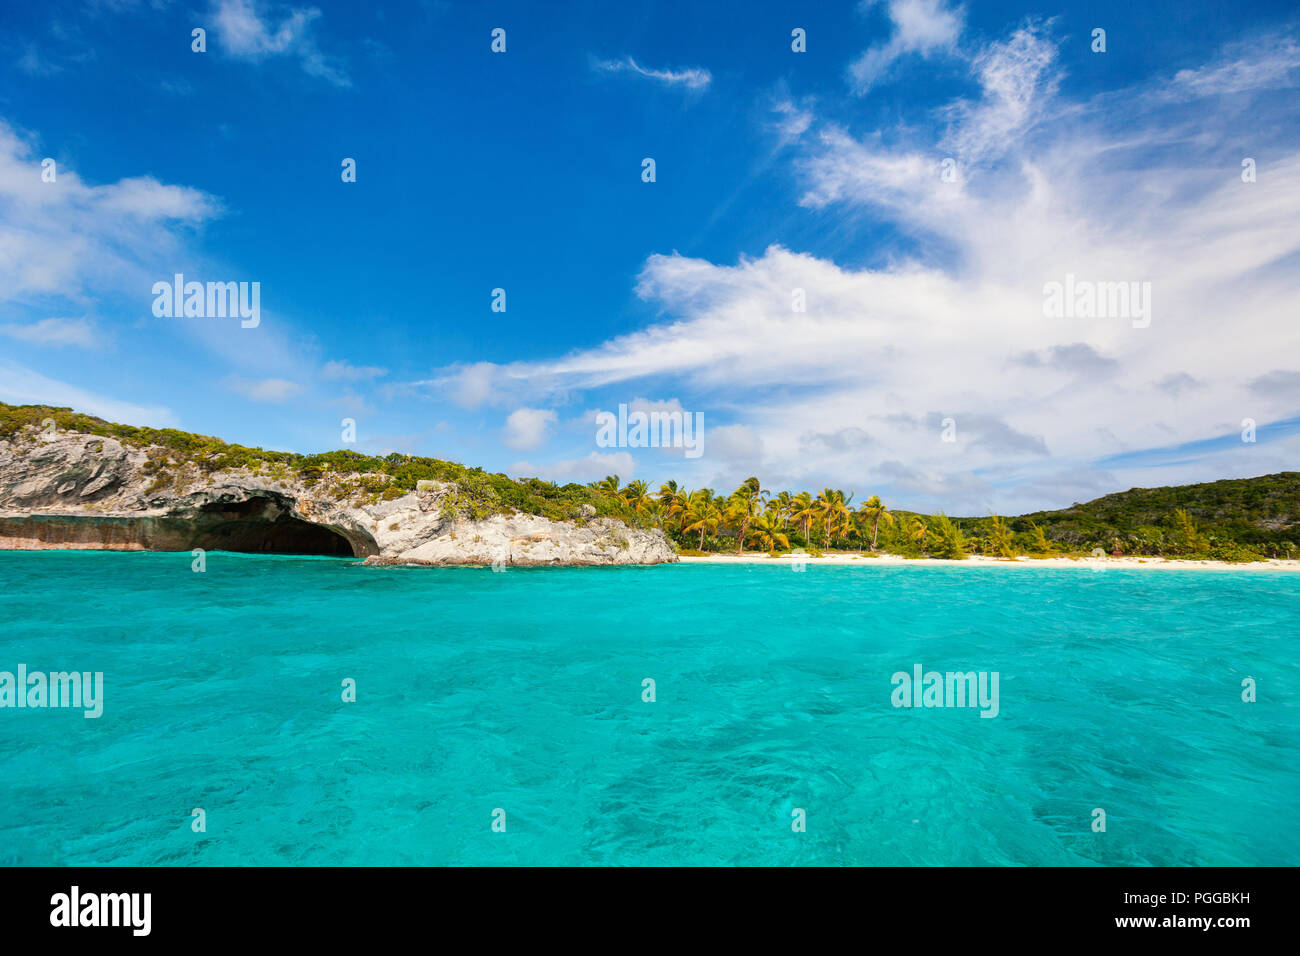 Beautiful tropical coast at Exuma Bahamas Stock Photo